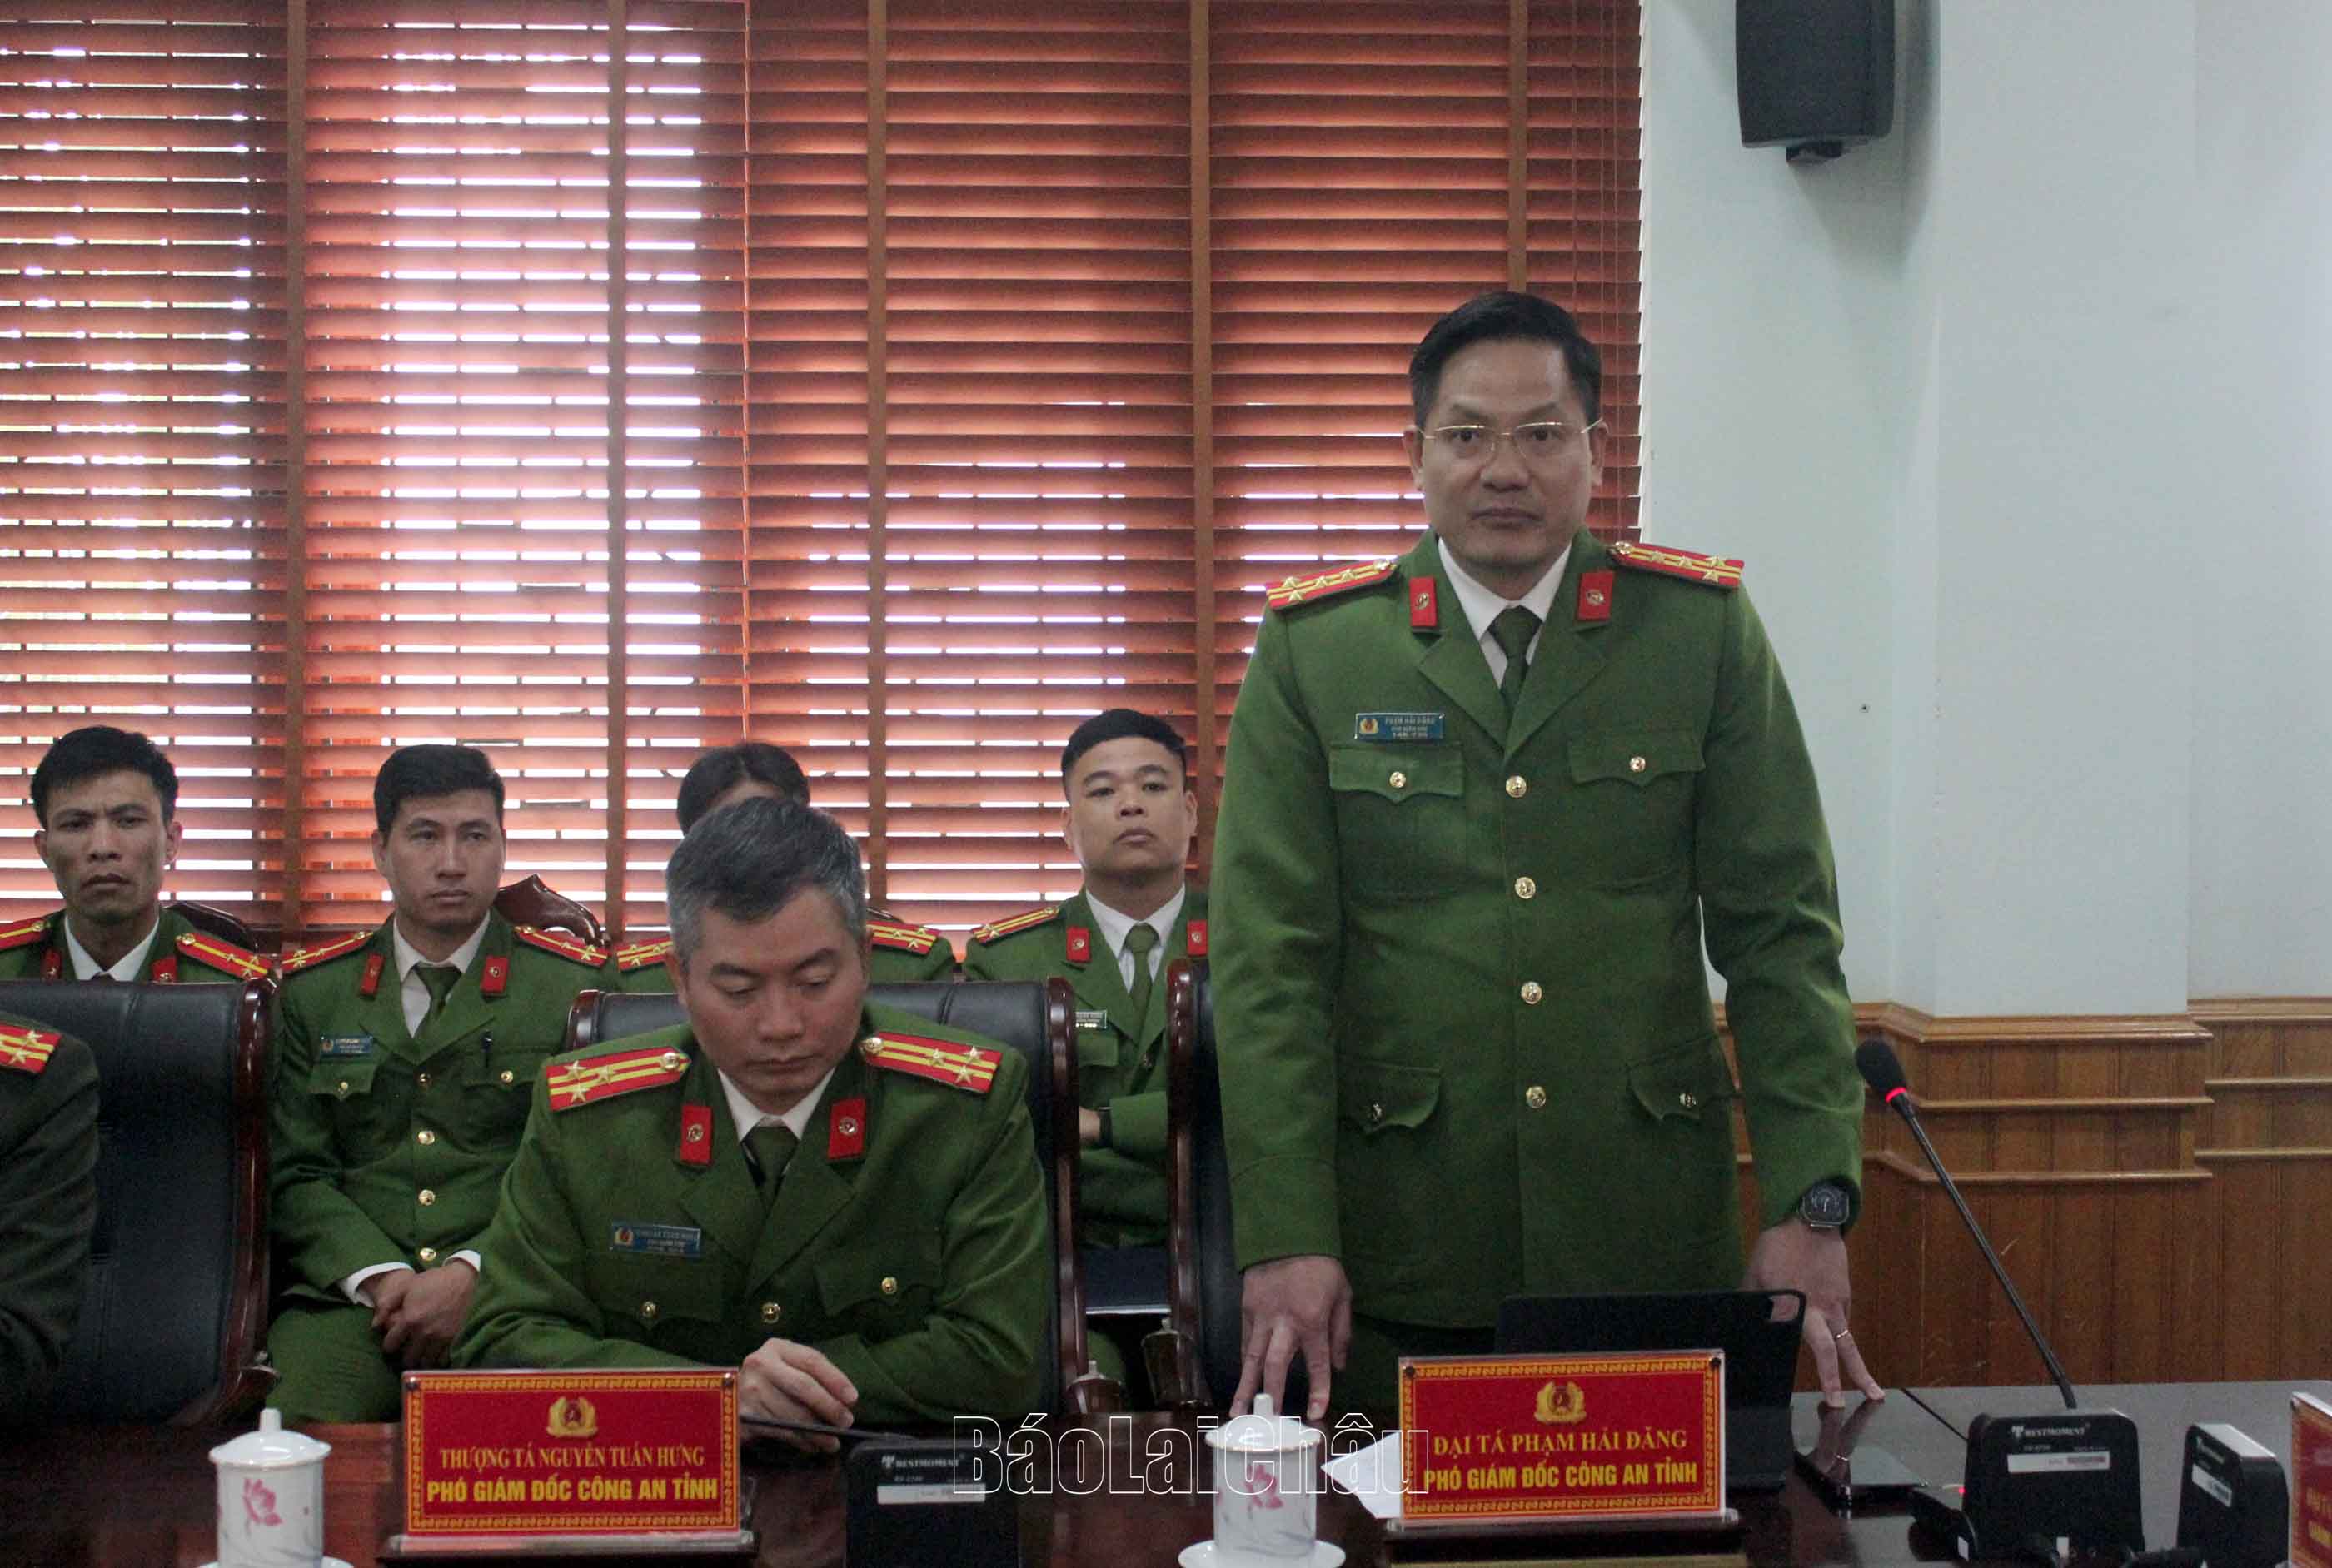 Đại tá Phạm Hải Đăng - Phó Giám đốc Công an tỉnh trình bày quá trình phát hiện và truy bắt đối tượng giết người Lù Xuân Minh.